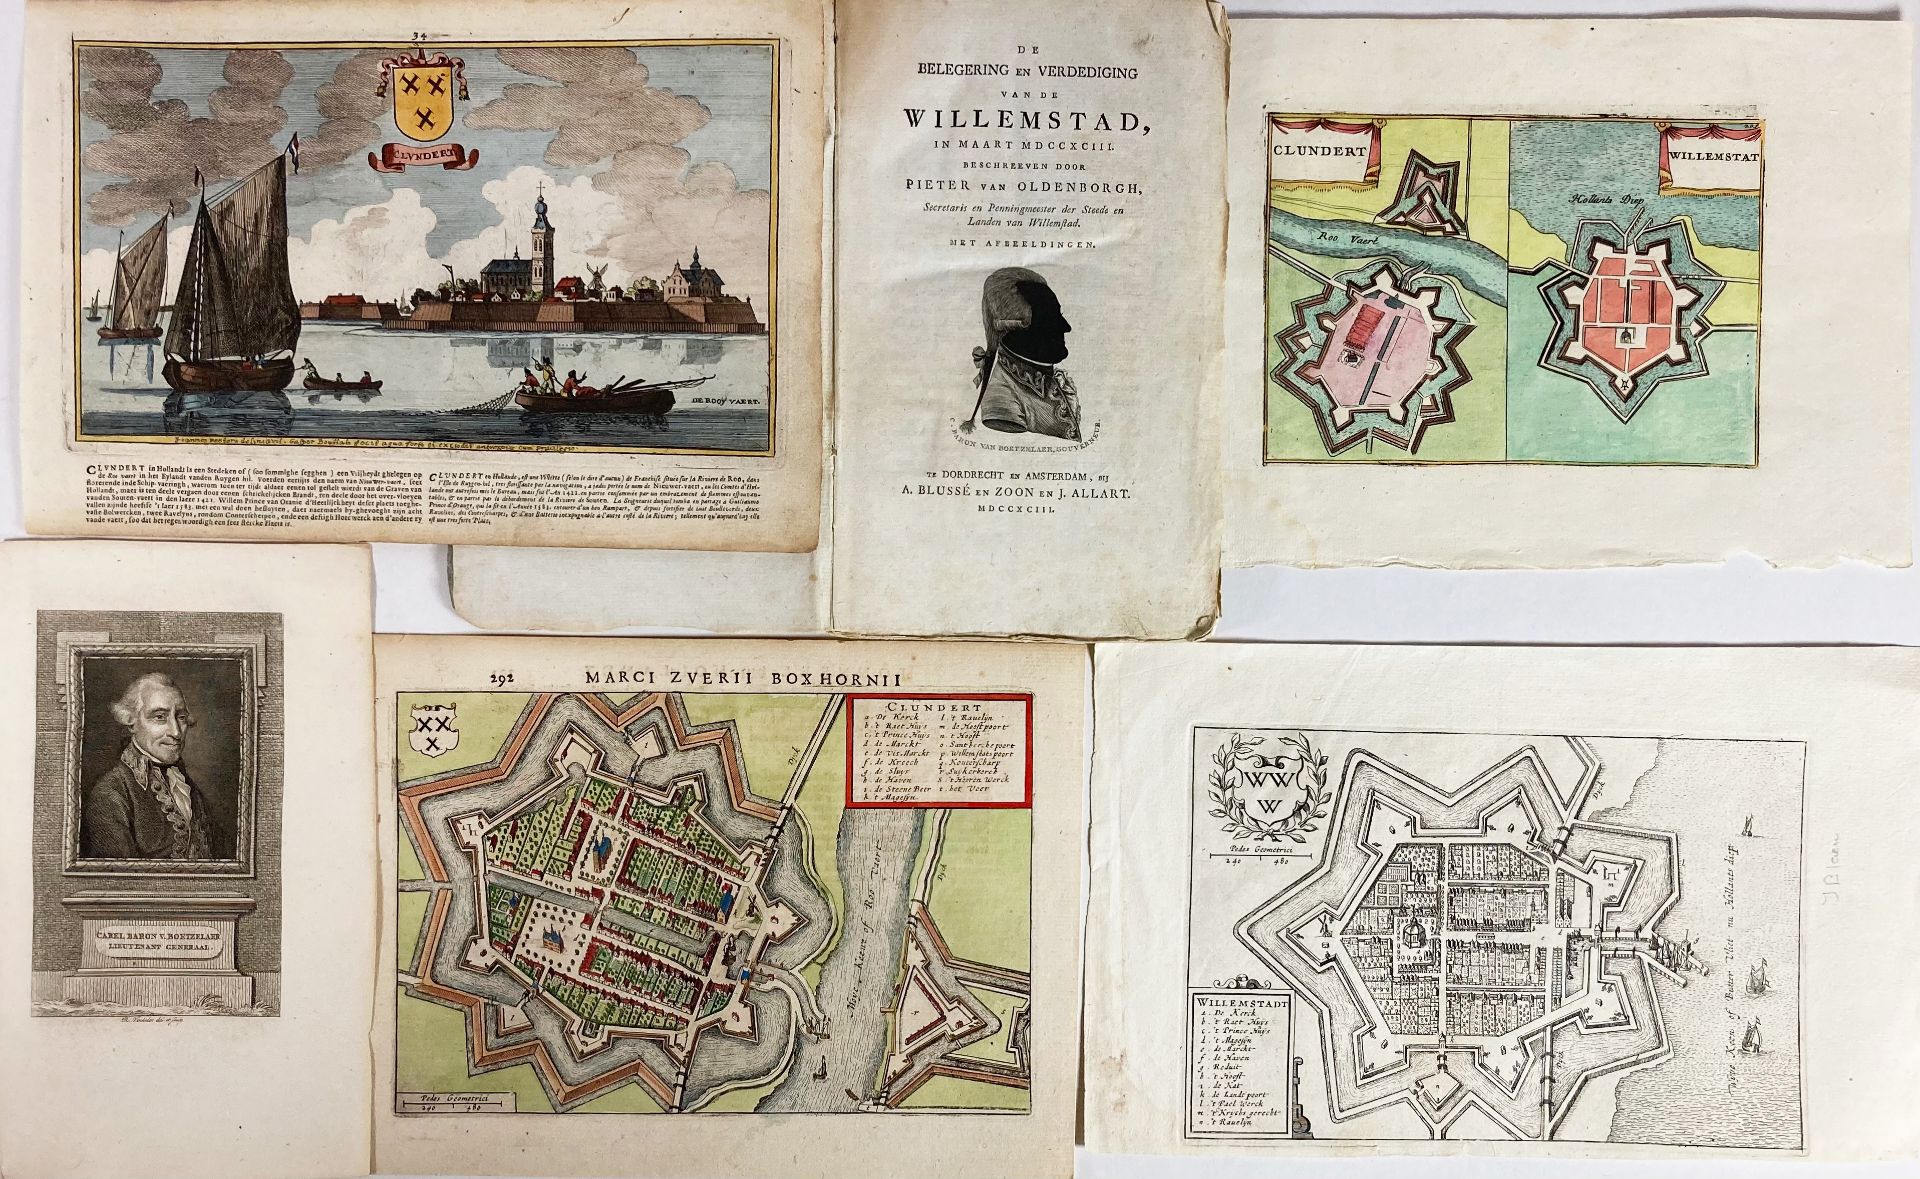 LOW COUNTRIES -- OLDENBORCH, P. v. De belegering en verdediging van de Willemstad